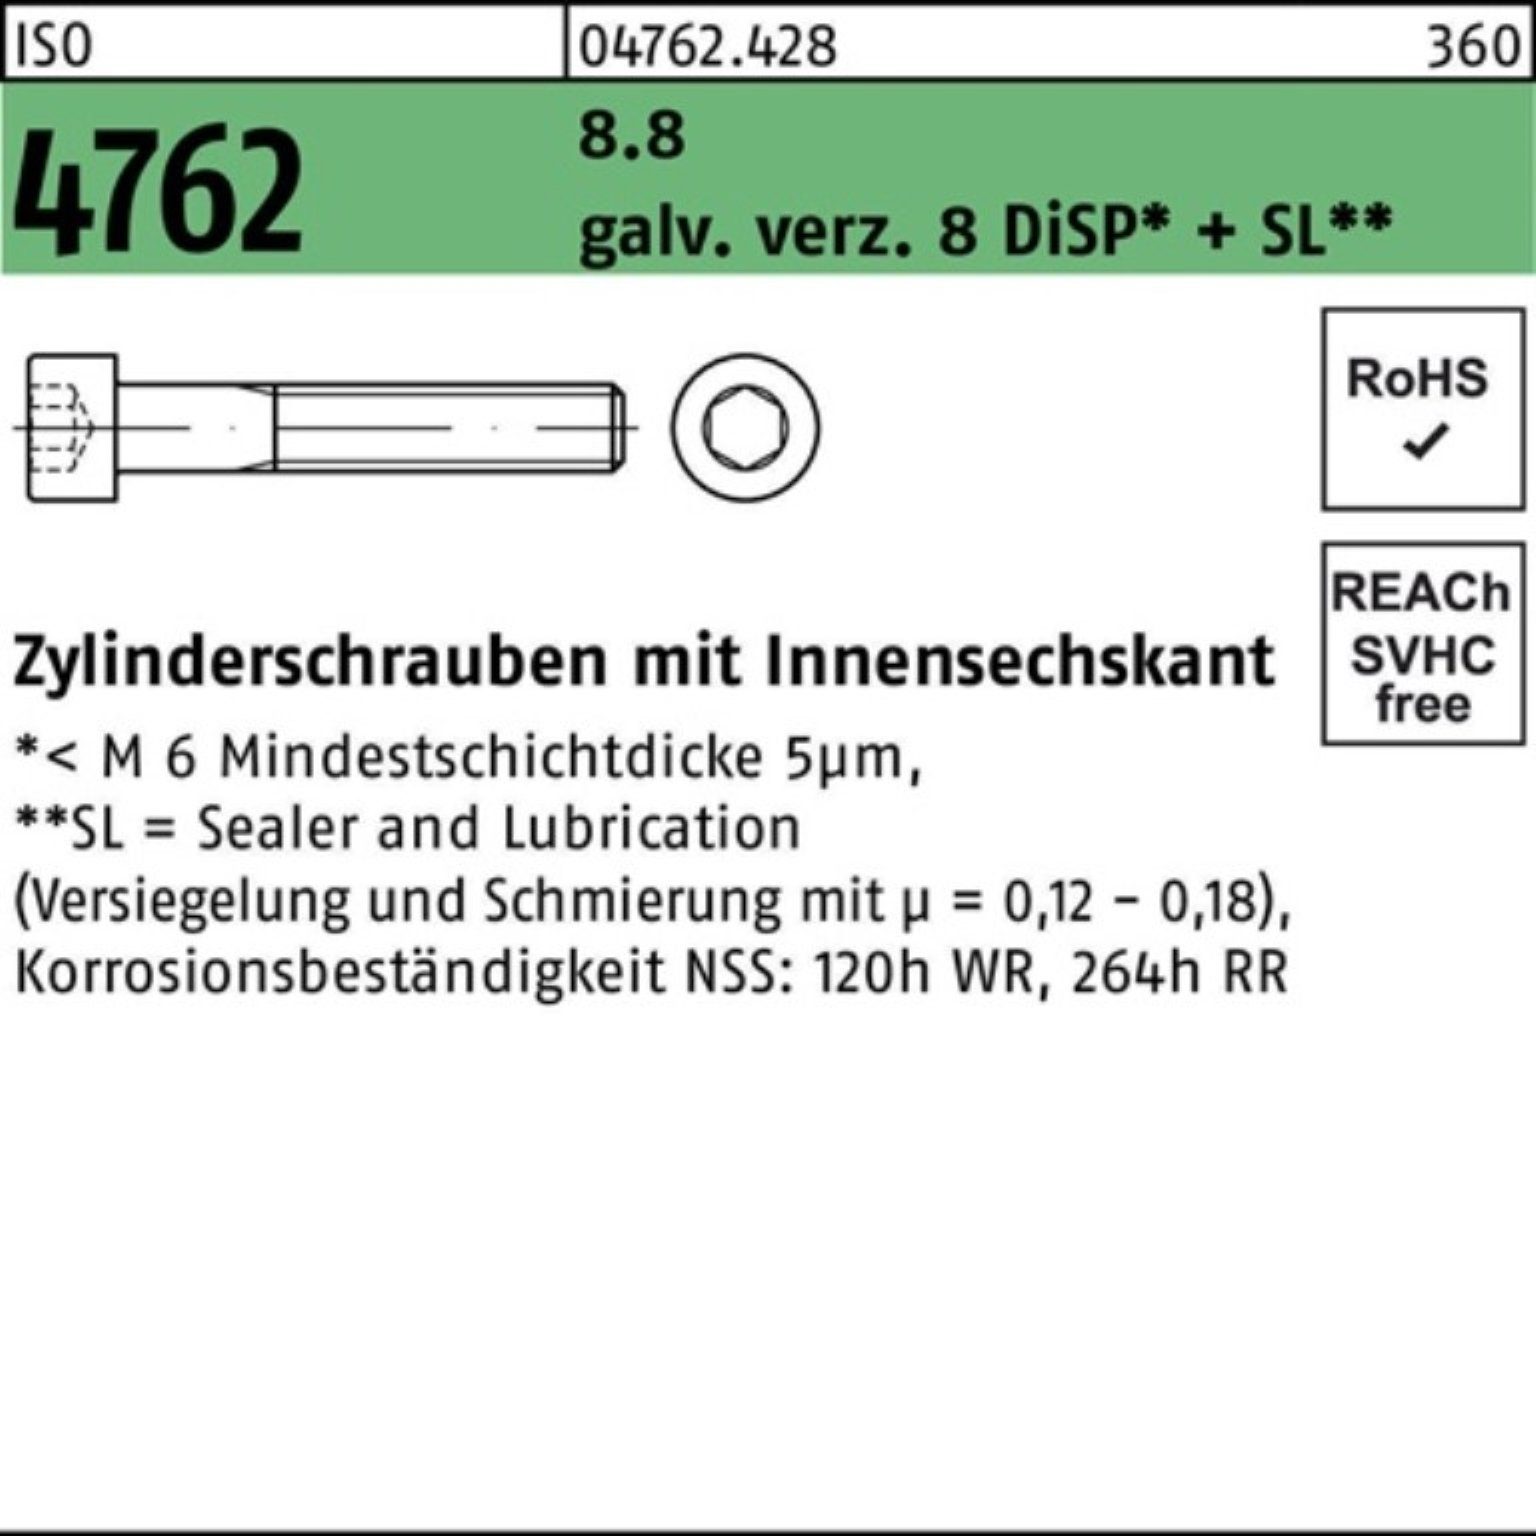 Reyher 100er Zylinderschraube M10x65 Zylinderschraube 8.8 galv.verz. Pack Innen-6kt 4762 8 ISO